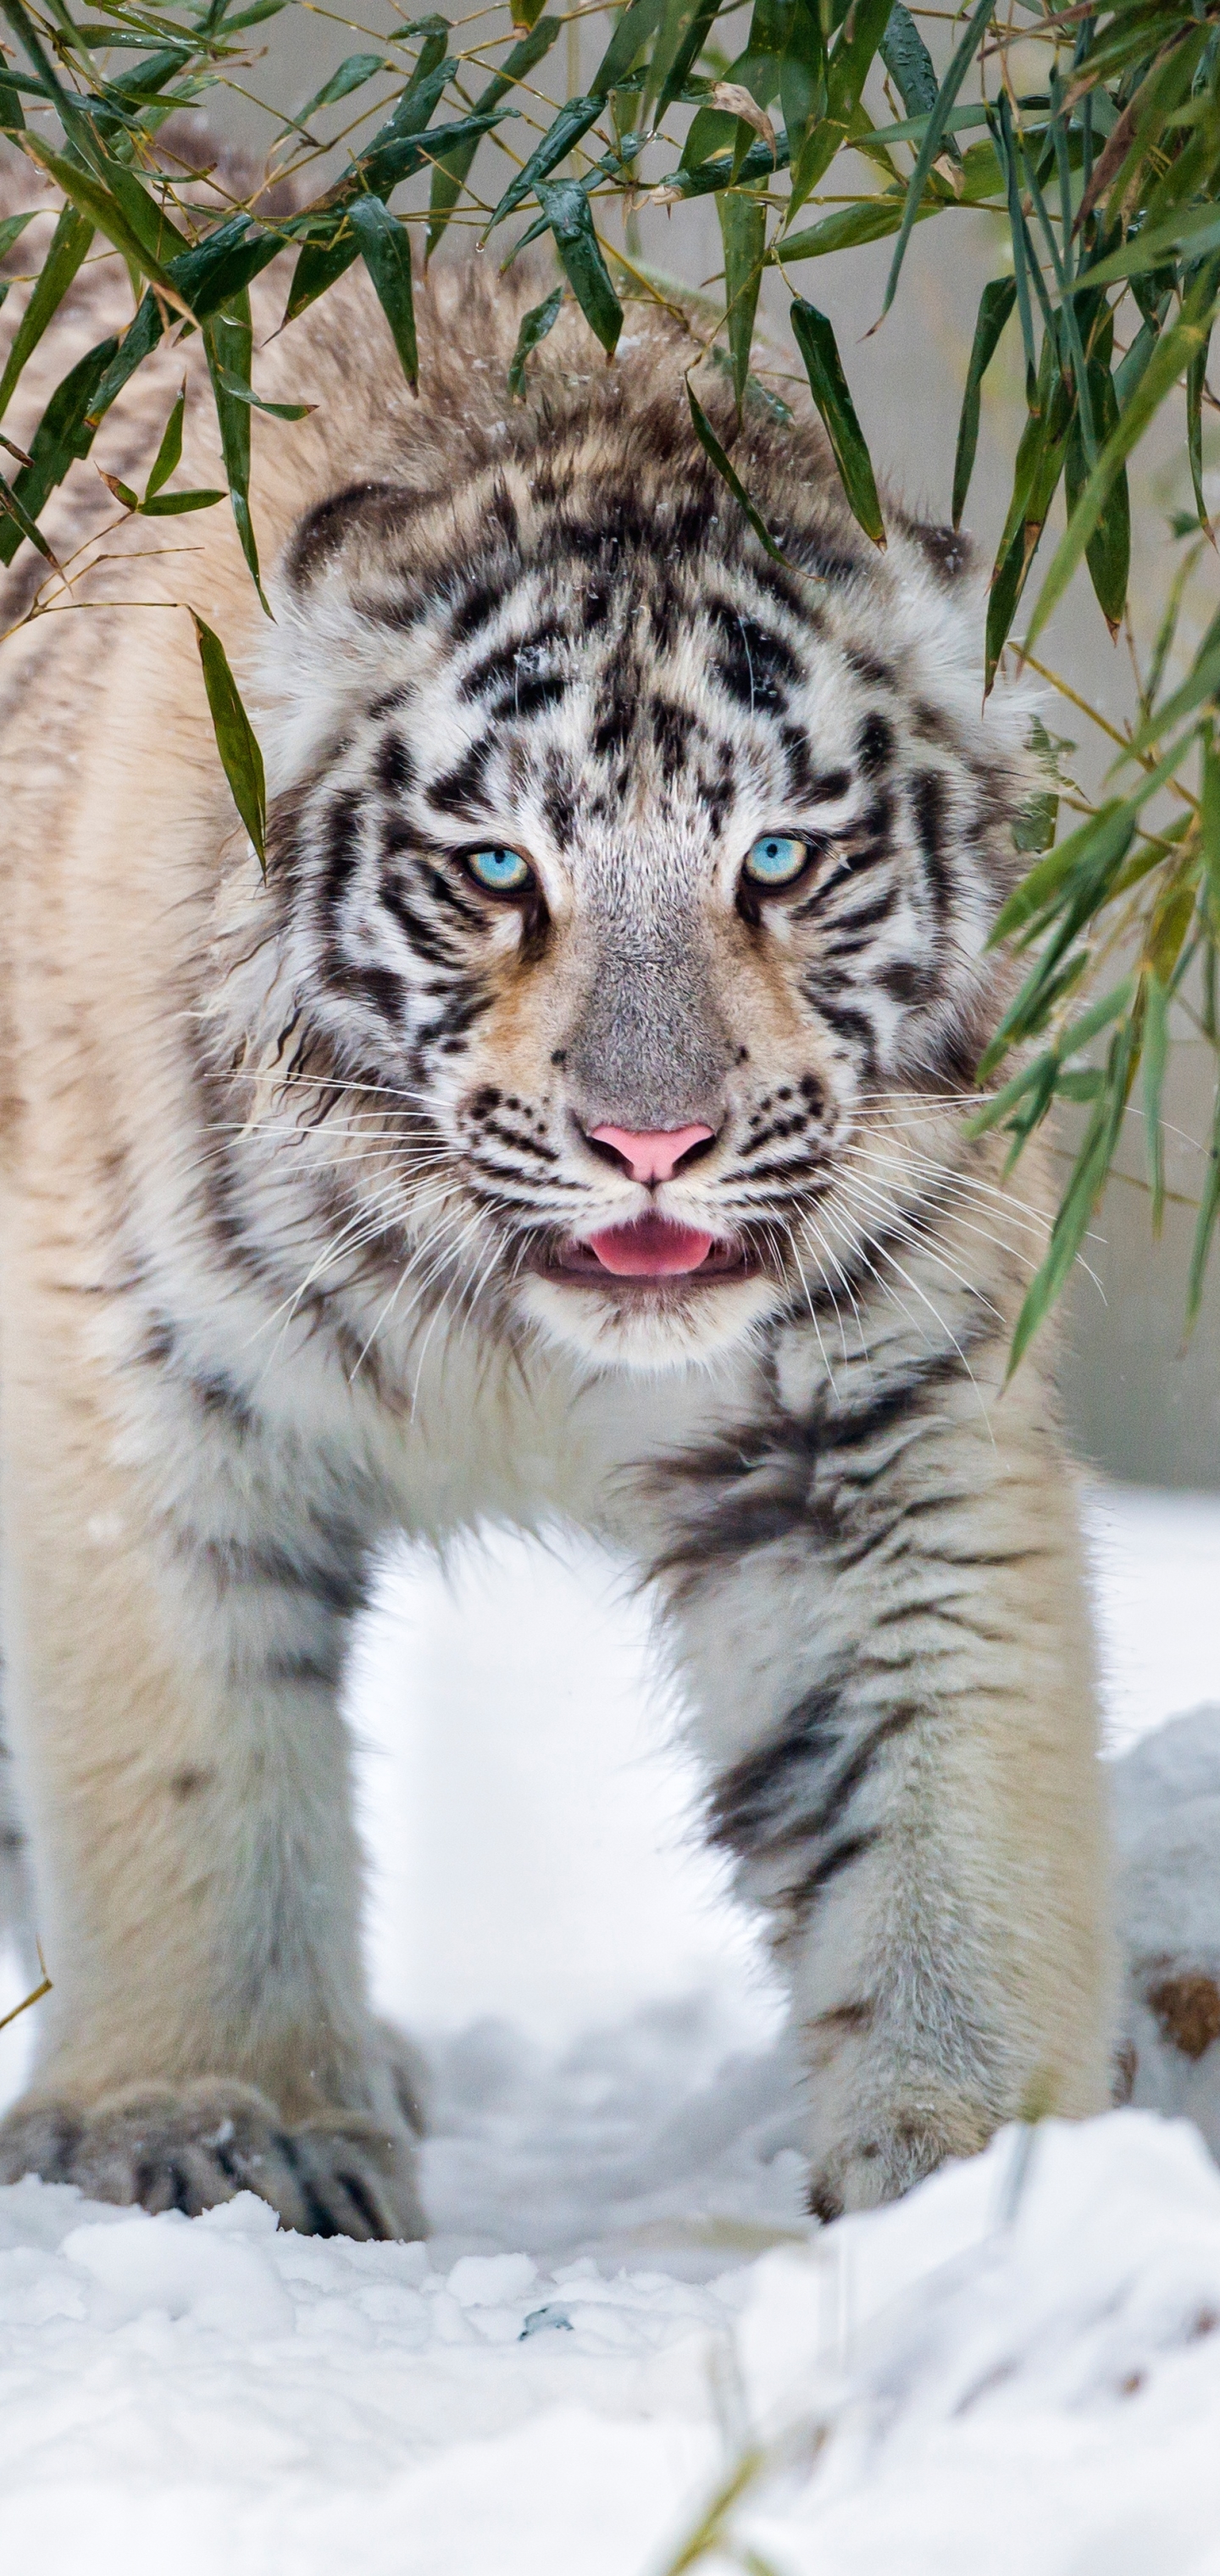 Скачать картинку Животные, Зима, Снег, Тигр, Белый Тигр, Кошки в телефон бесплатно.